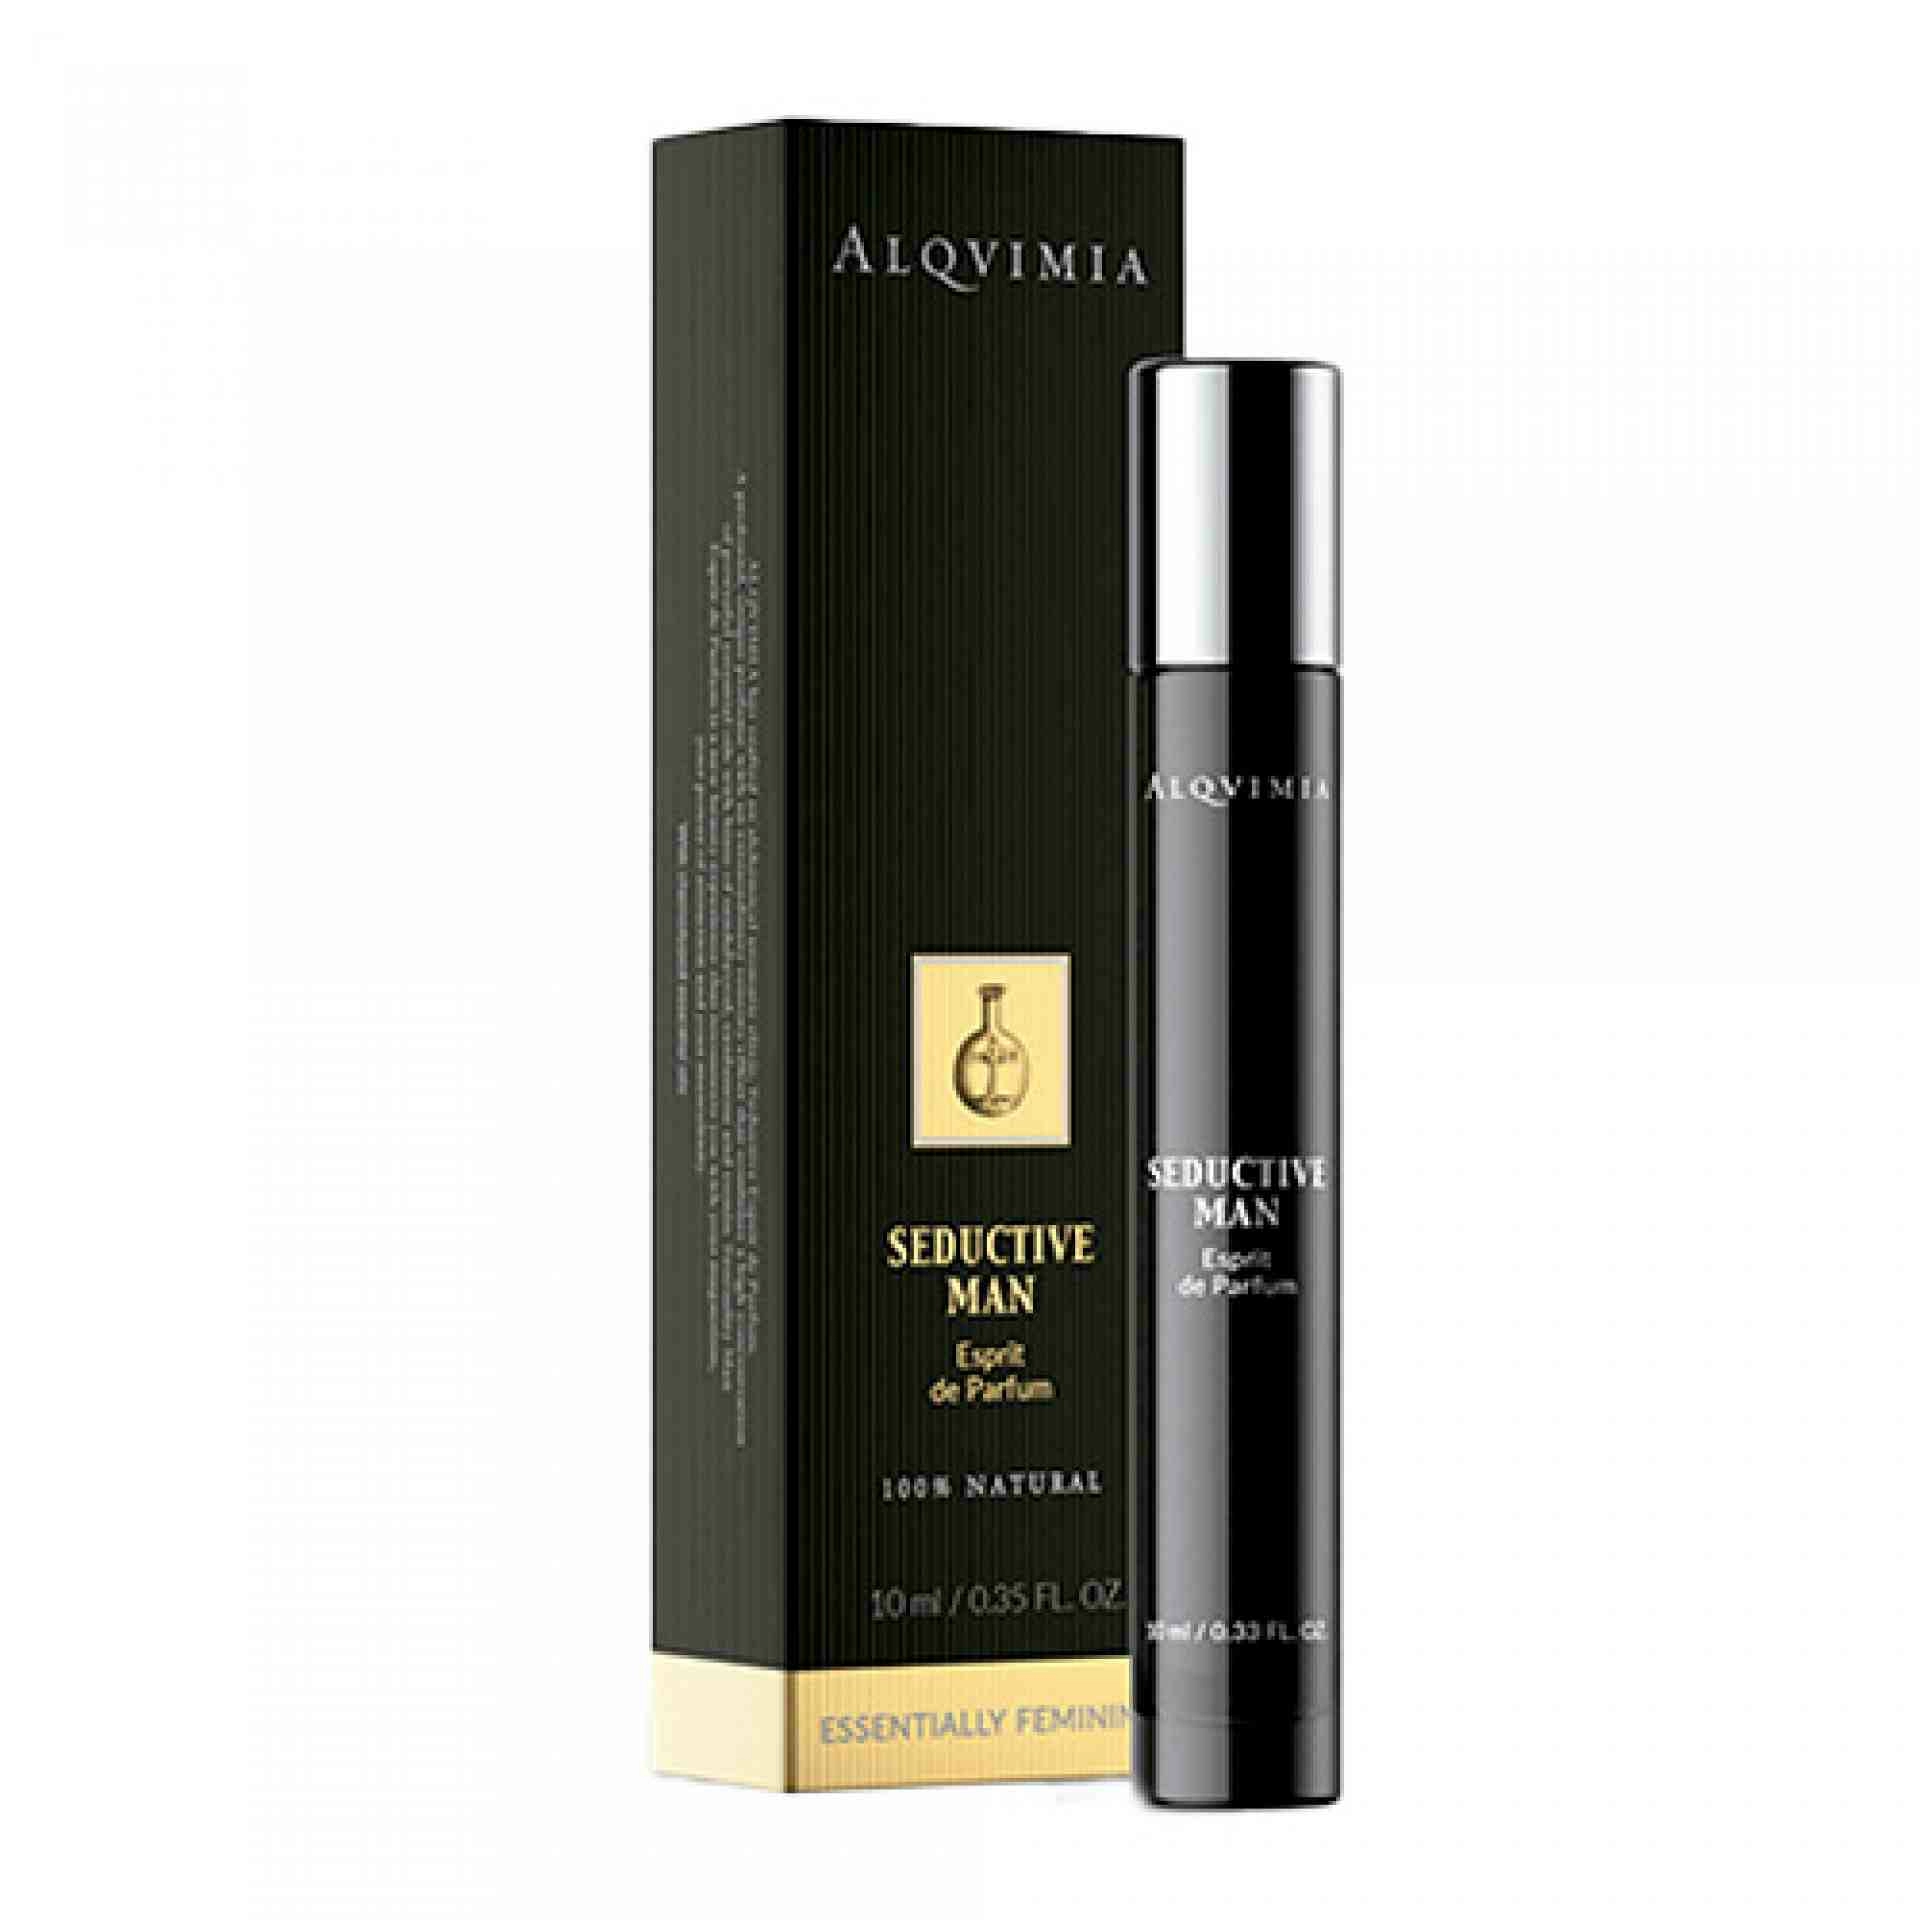 Seductive Man I Perfume para hombre 10ml - Esprit de Parfum - Alqvimia ®